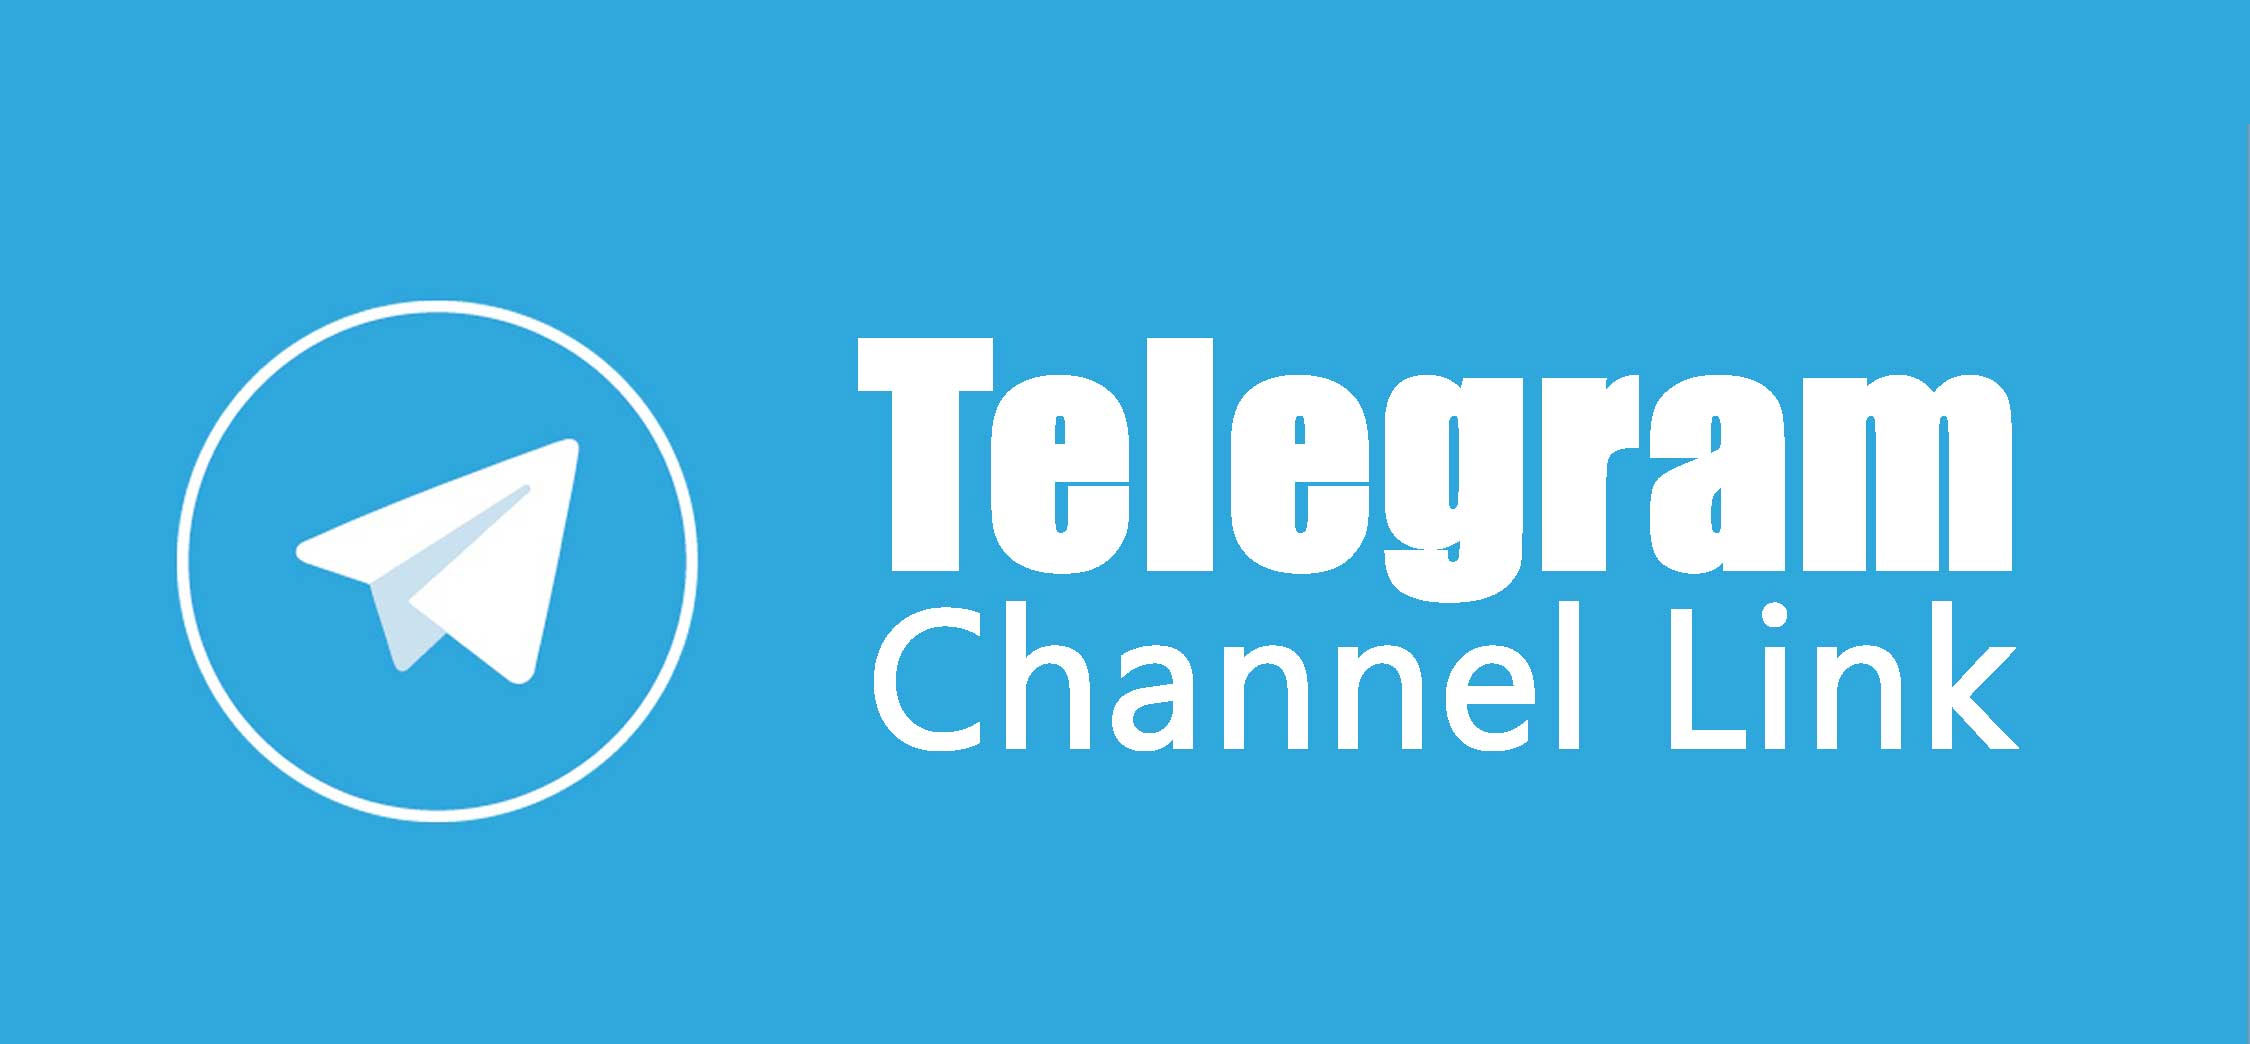 بهترین کانال های فارسی تلگرام براساس بازدید